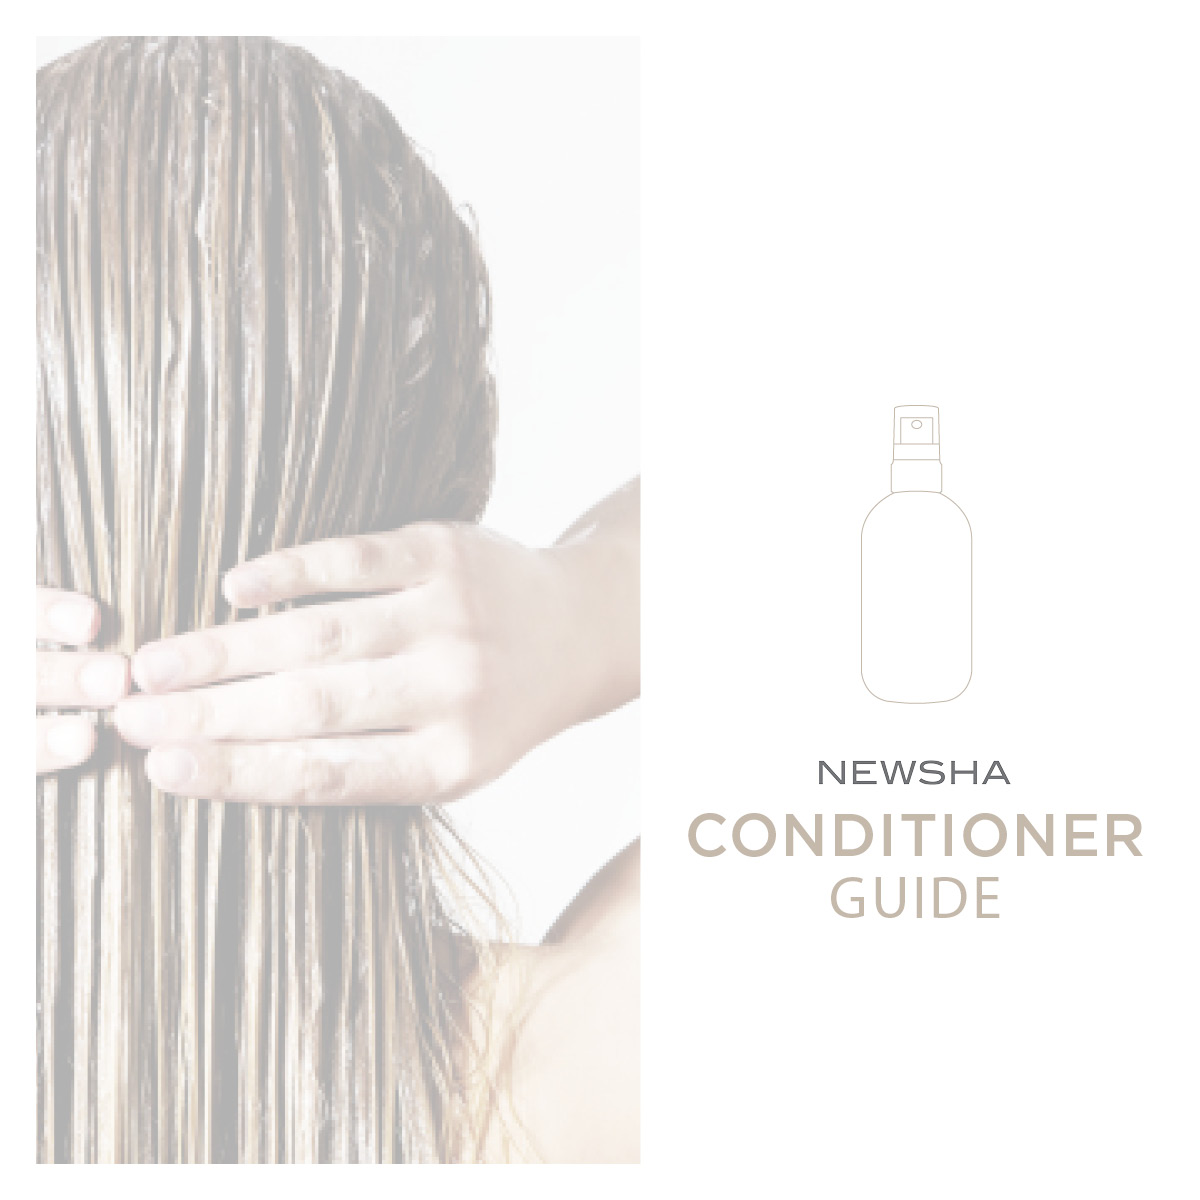 Der NEWSHA Conditioner Guide